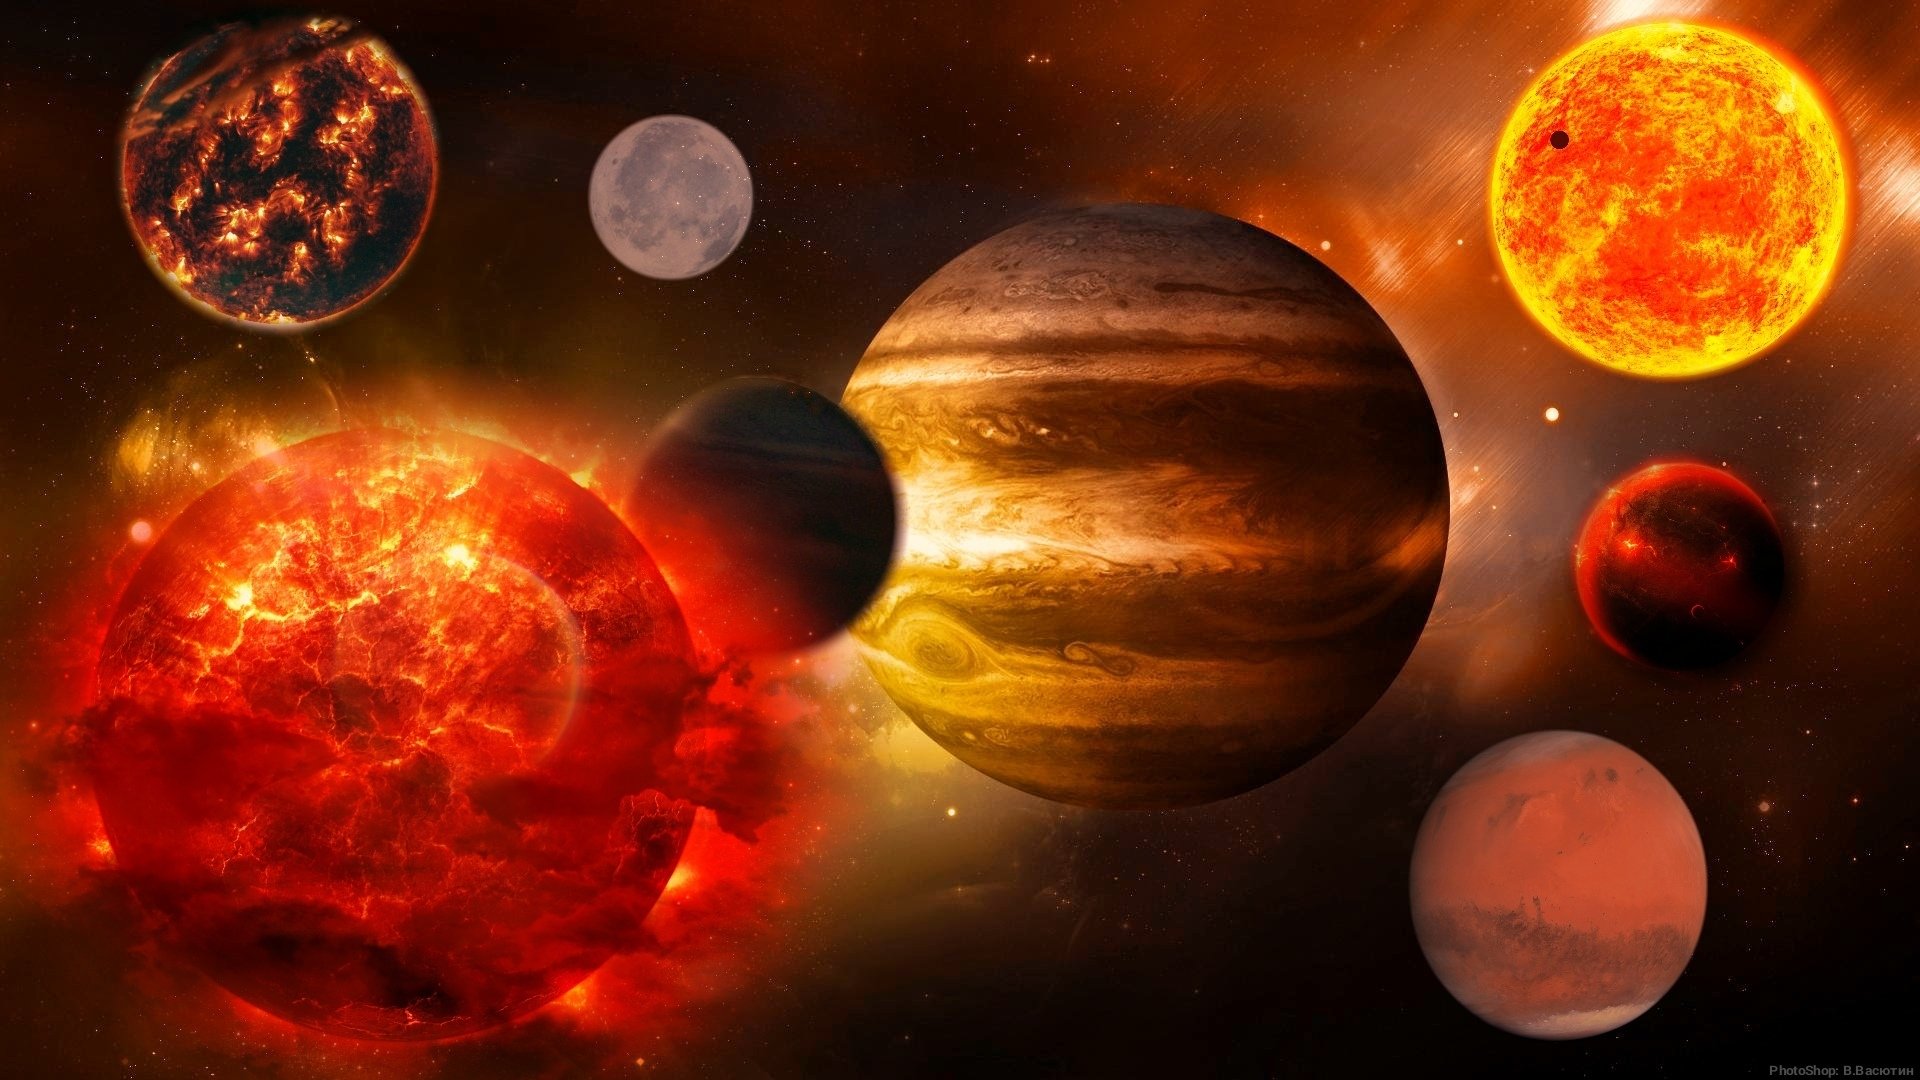 планеты солнечной системы фотографии из космоса